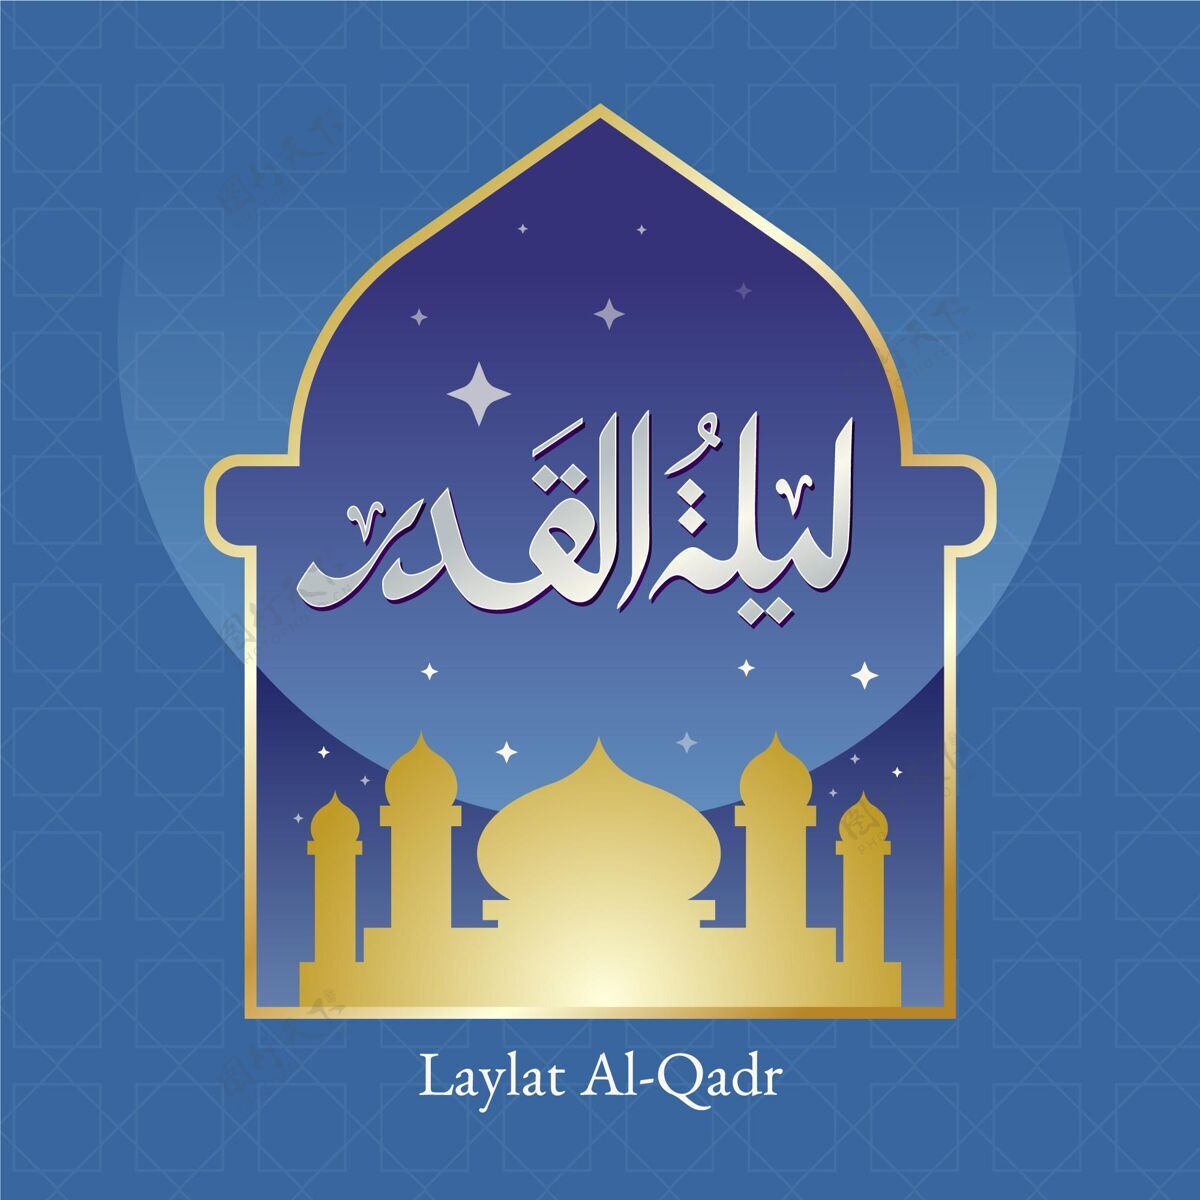 穆斯林梯度laylatal-qadr插图纪念权力之夜梯度